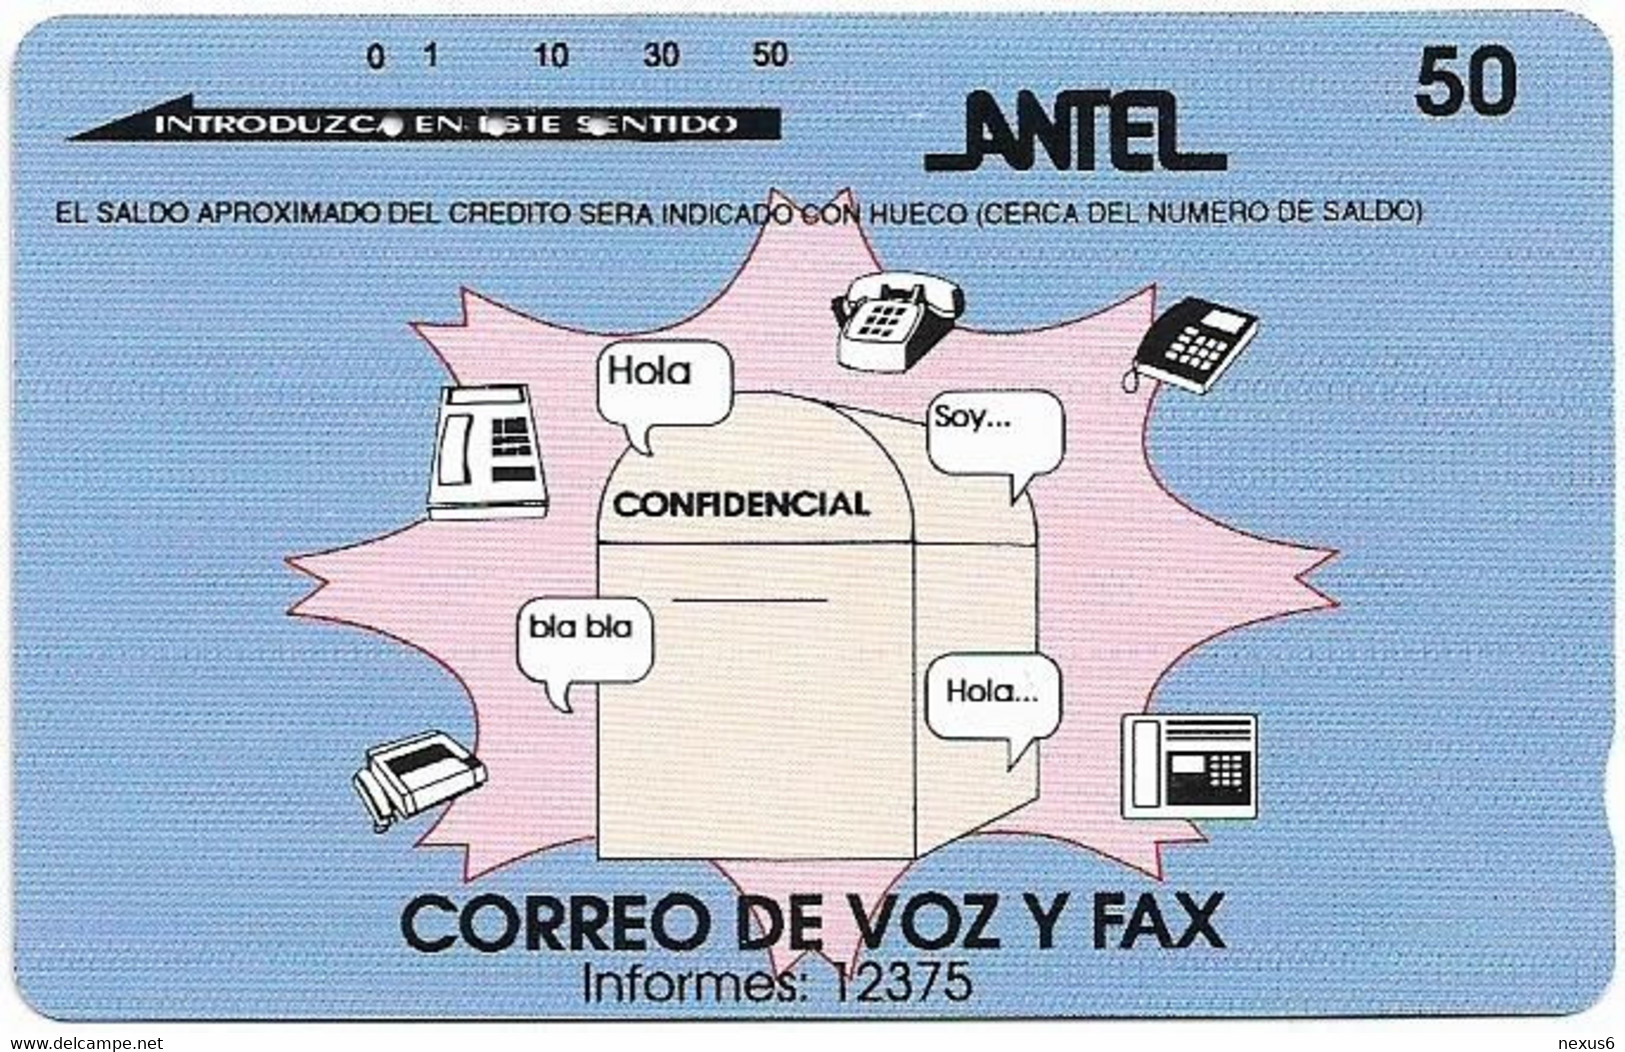 Uruguay - Entel (Tamura) - Correo De Voz Y Fax - 01.1995, 50U, 420.000ex, Used - Uruguay